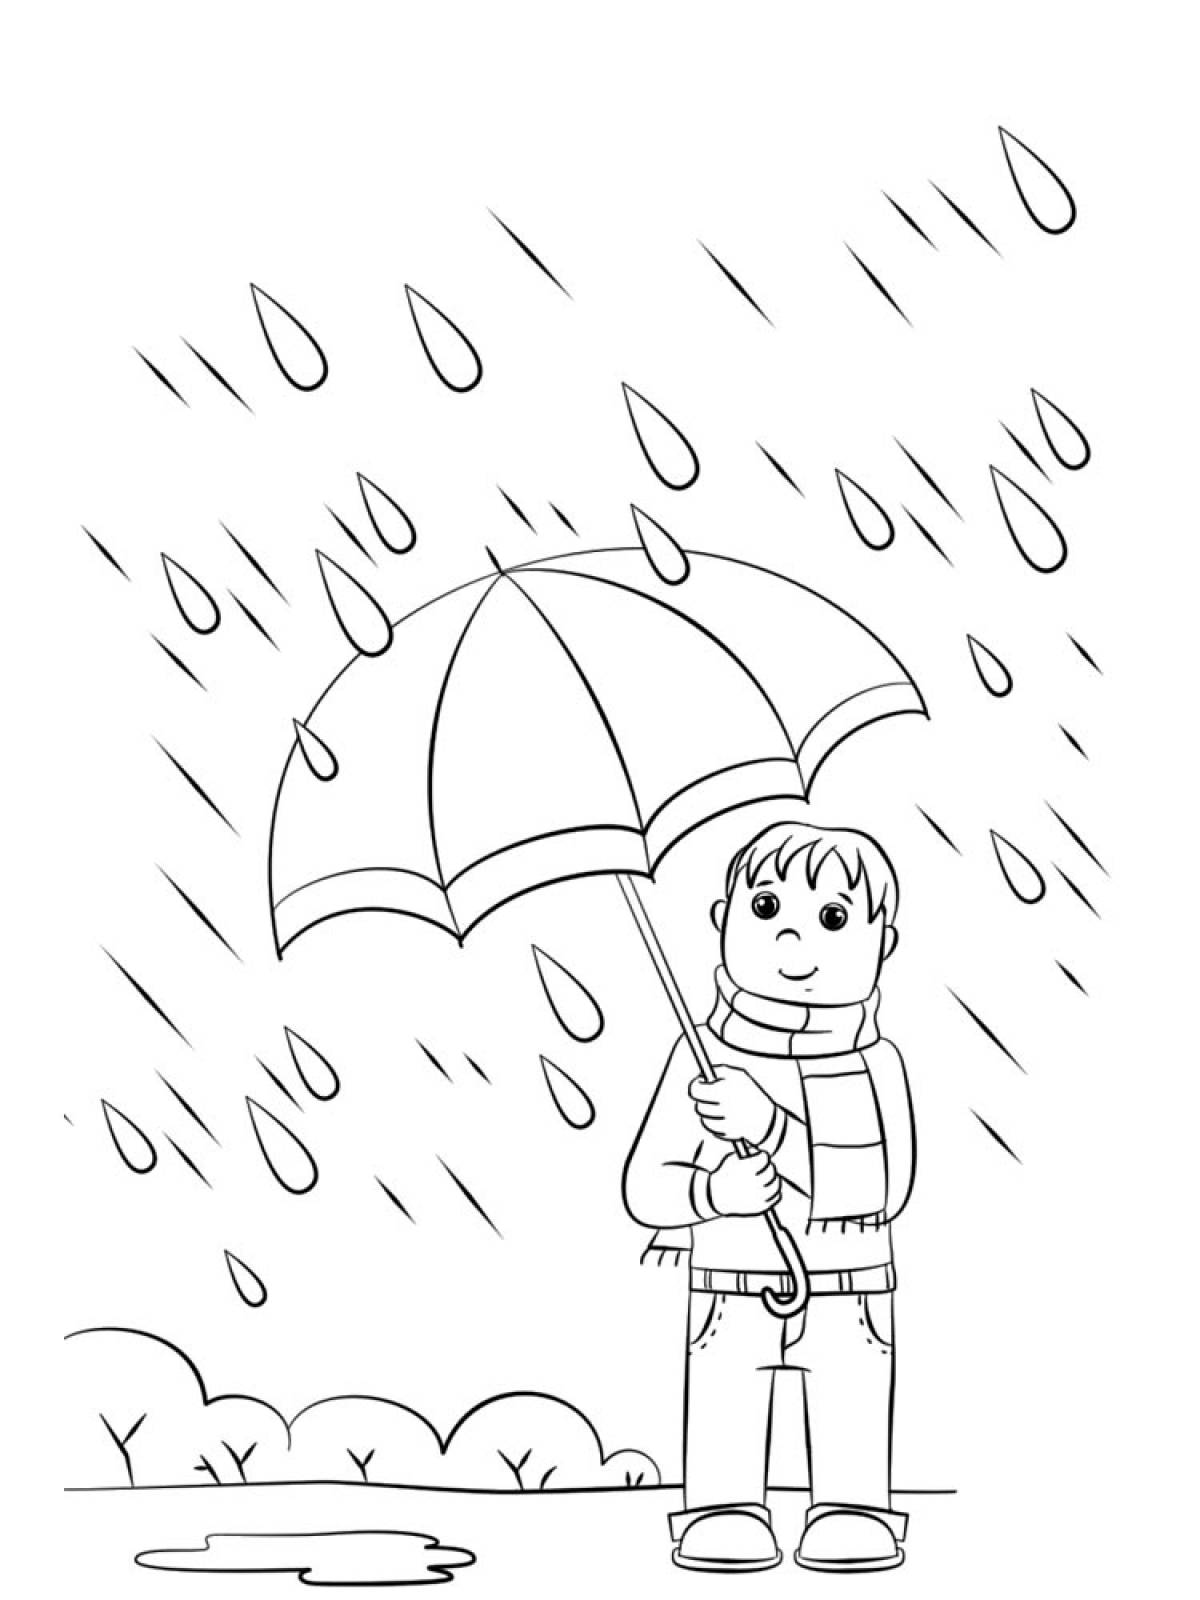 Boy in the rain